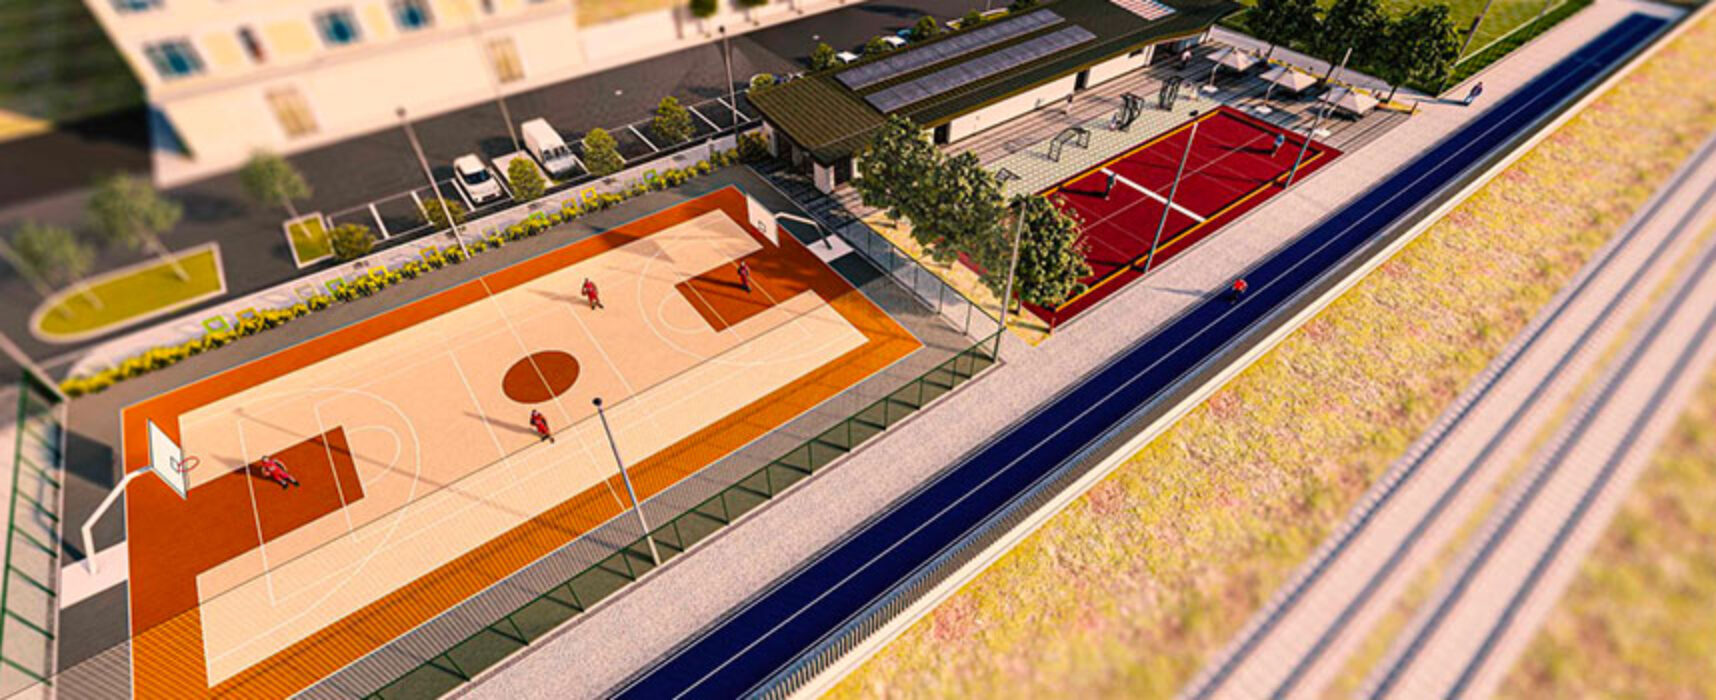 Nuovo centro sportivo a Bisceglie, Angarano: “Un altro tassello per miglioramento della nostra città”